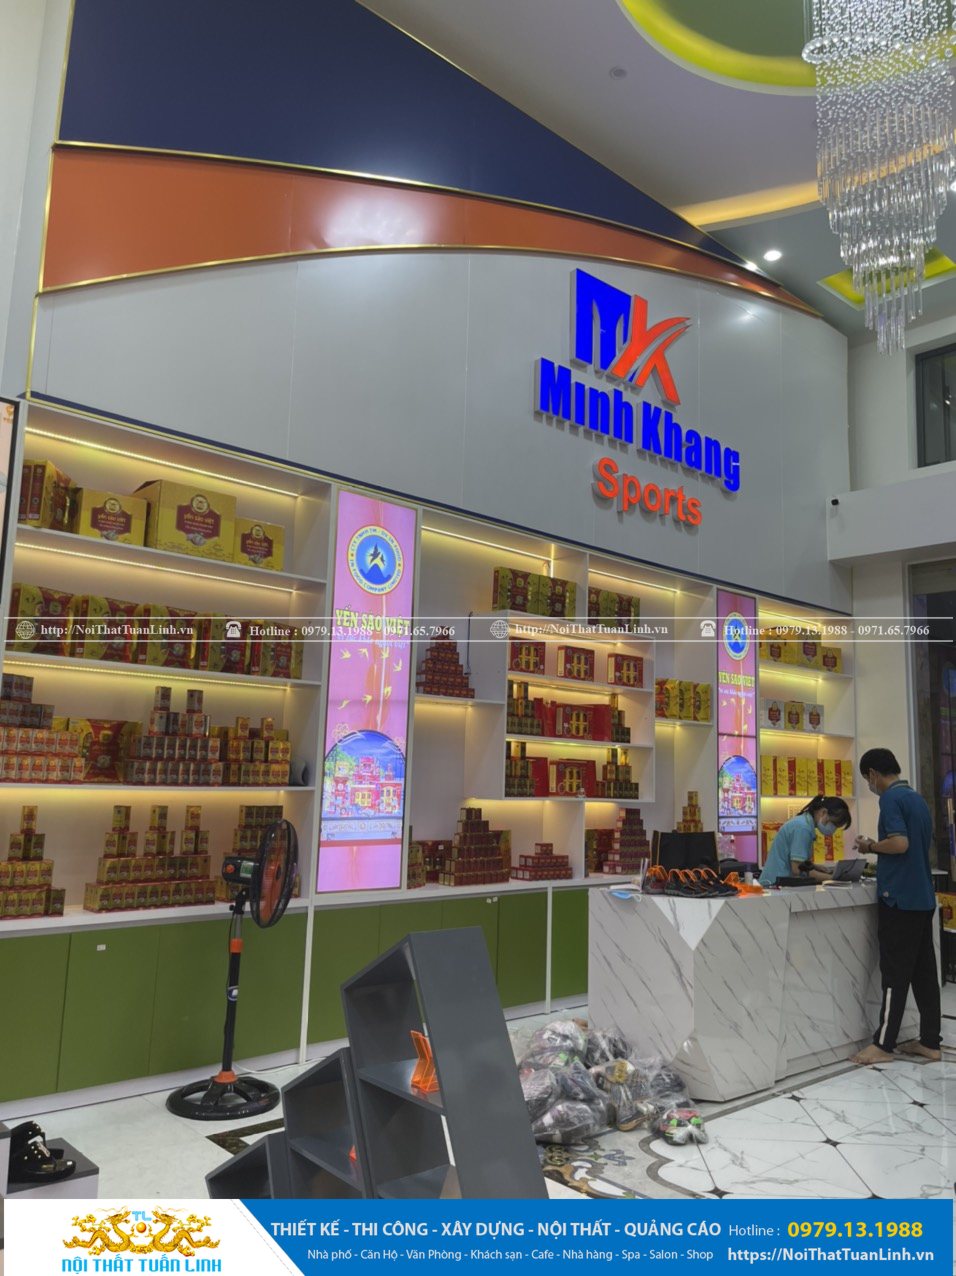 Báo giá thiết kế thi công nội thất shop thời trang Minh Khang Sport tại Phú Giáo Bình Dương 9